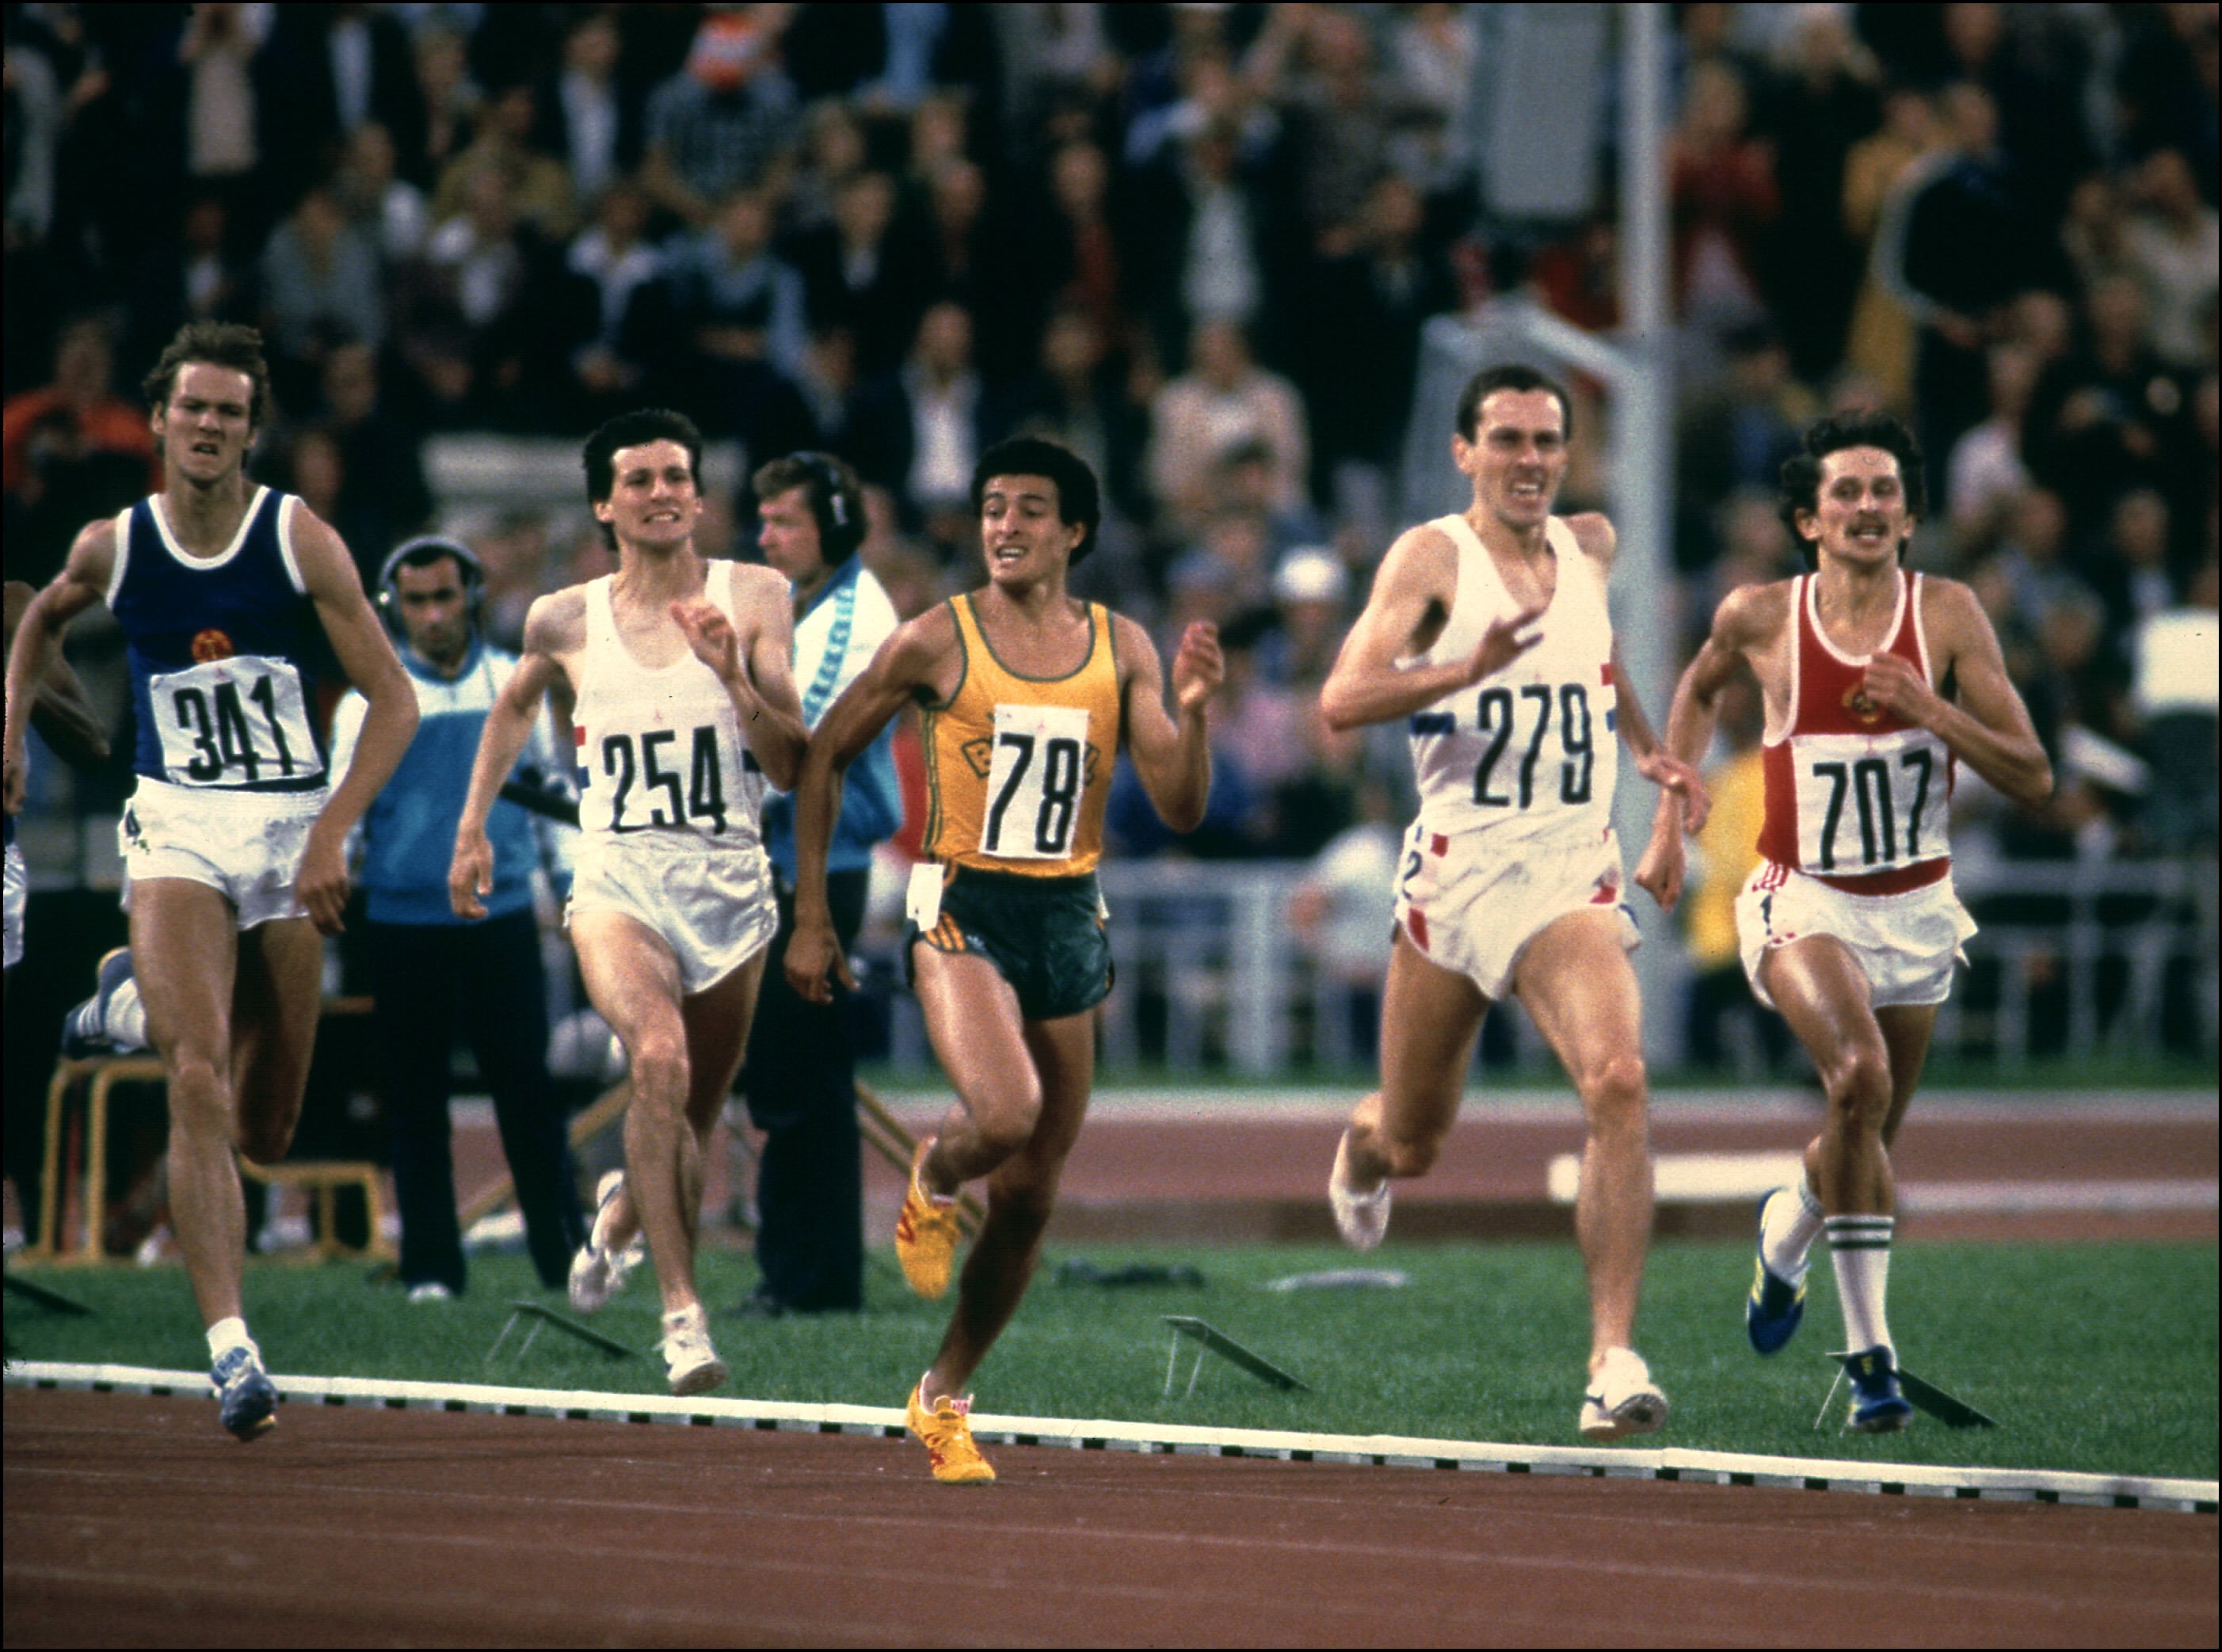 Steven Ovett, della Gran Bretagna, si avvia a vincere la gara degli 800 metri piani. Da sinistra a destra: Detlef Wagenknecht, Sebastian Coe (medaglia d'argento), Agberto Concei Guimares, Steven Ovett (medaglia d'oro) e Nikolaï Kirov (medaglia di bronzo)